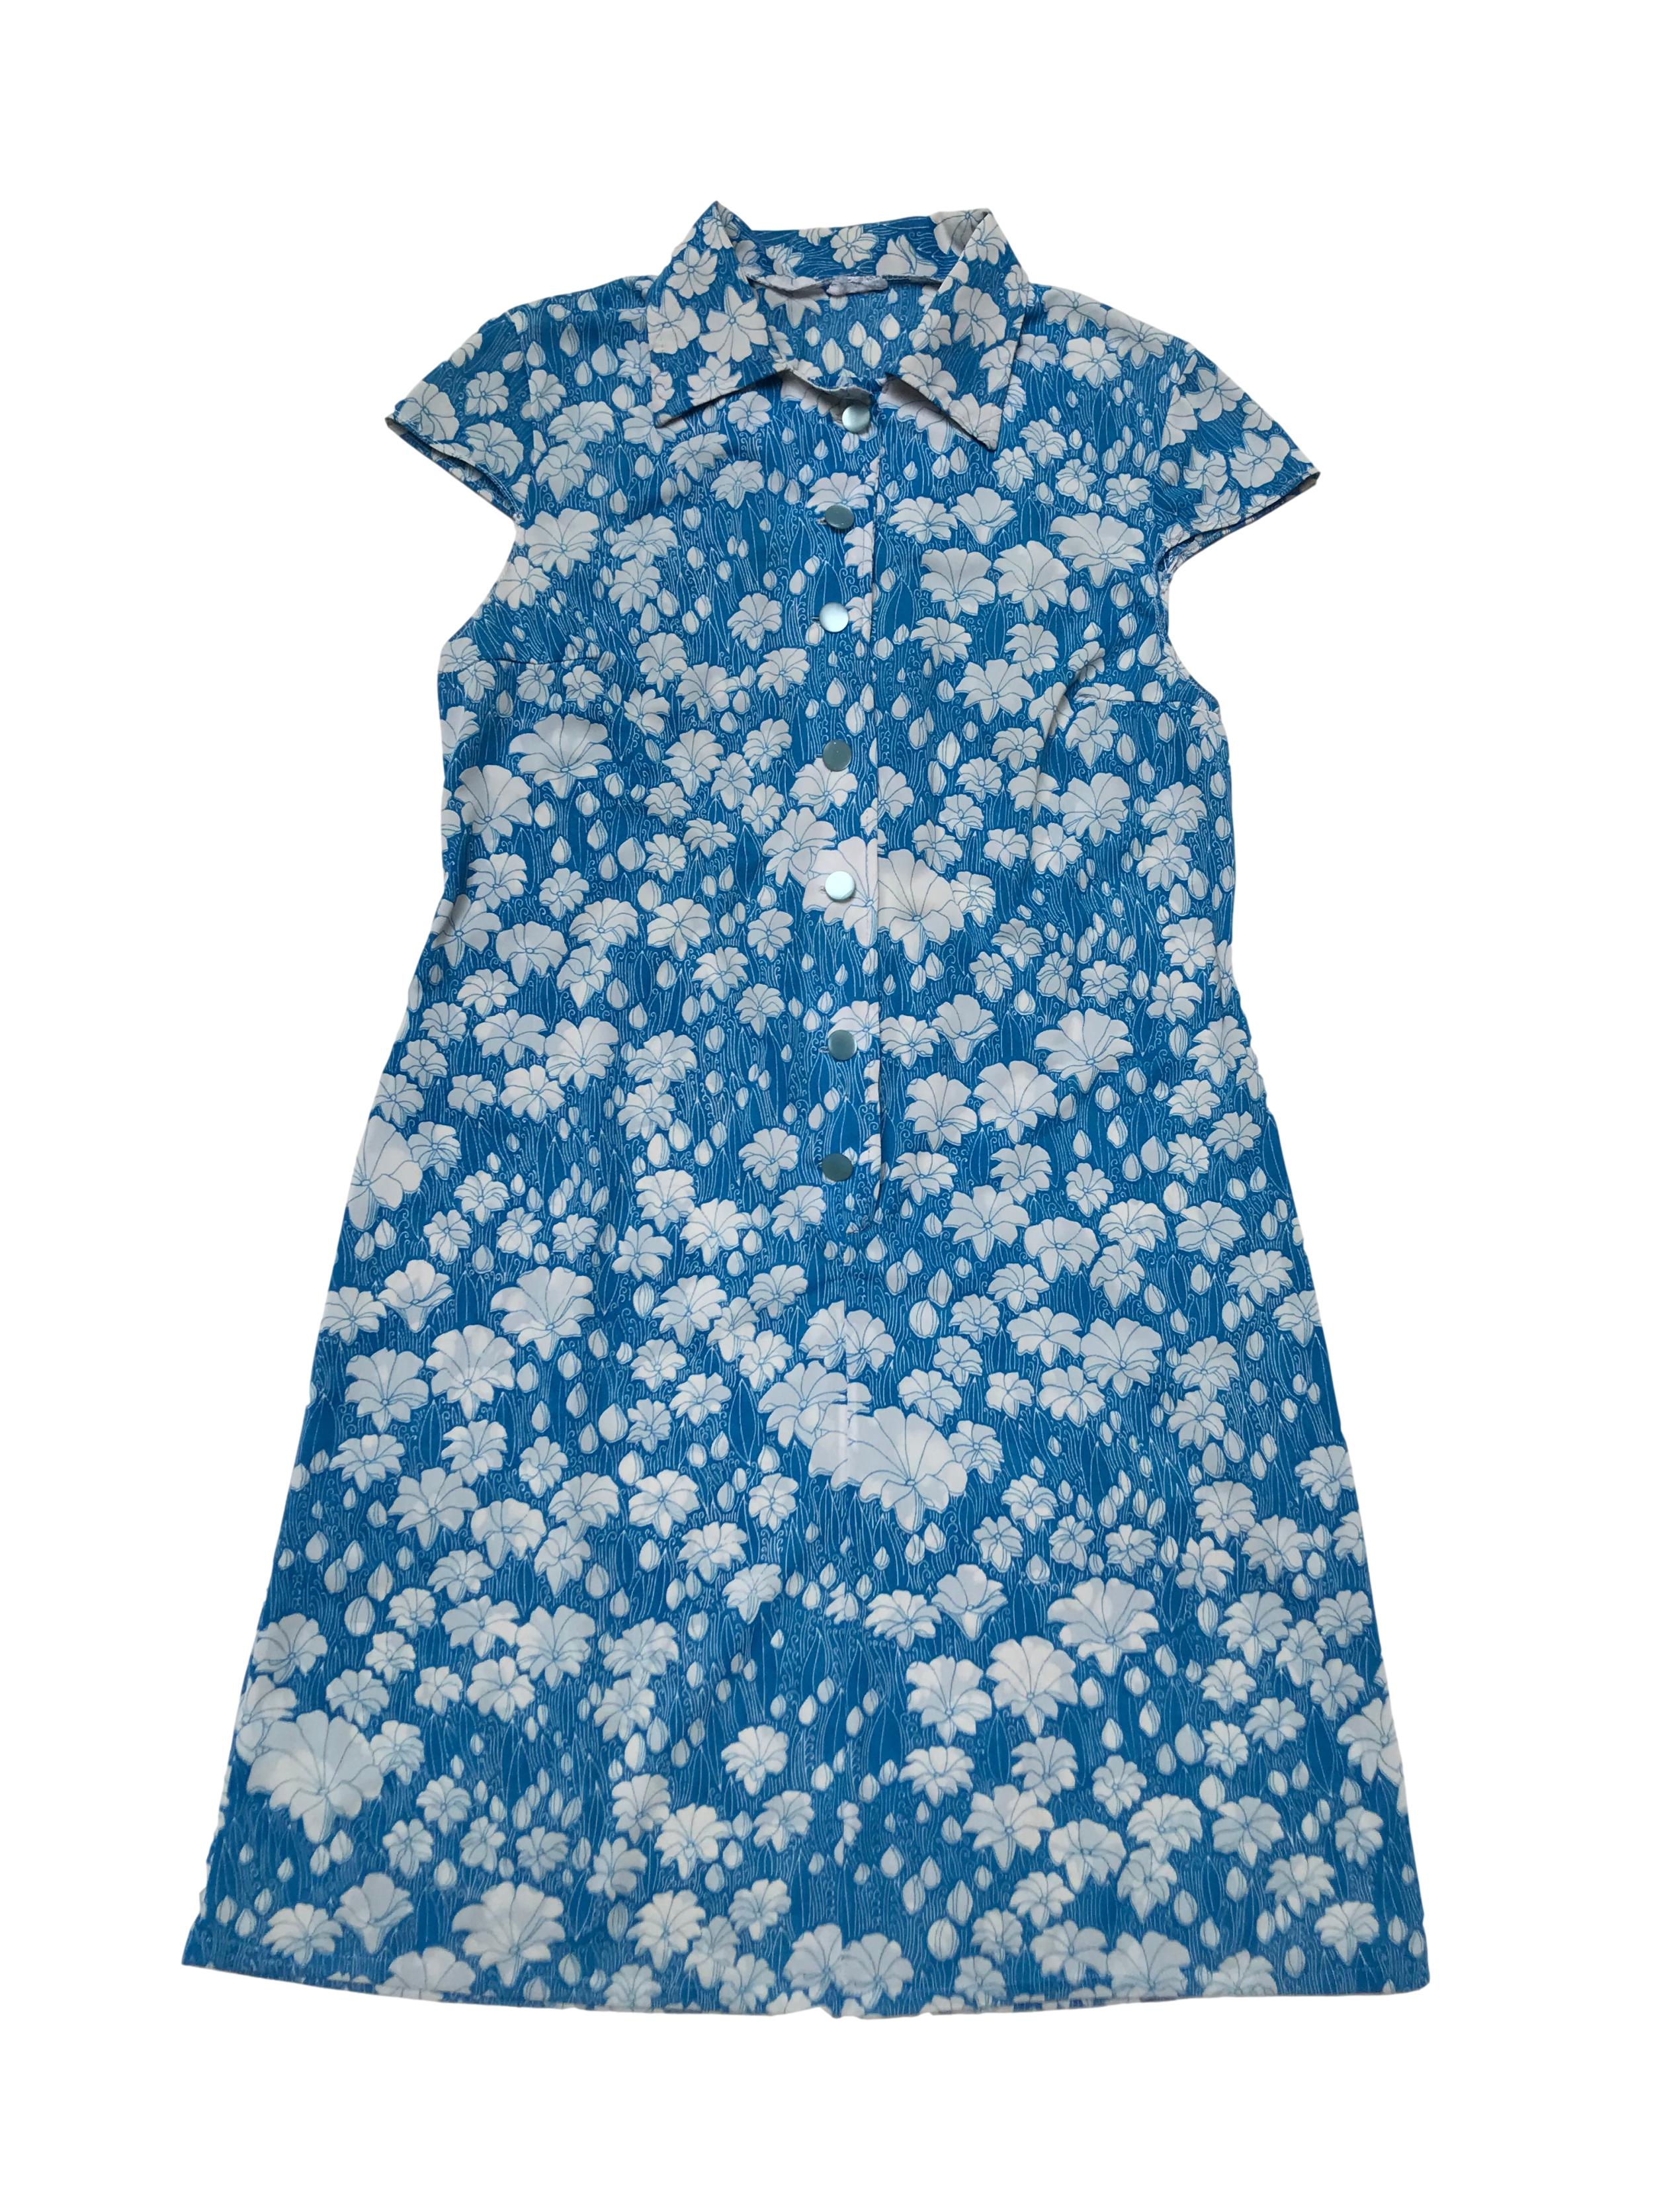 Vestido vintage remodelado, tela delgada azul con print de flores blancas. Tiene dos zurcidos invisibles en la espalda. Busto 106cm Largo 95cm